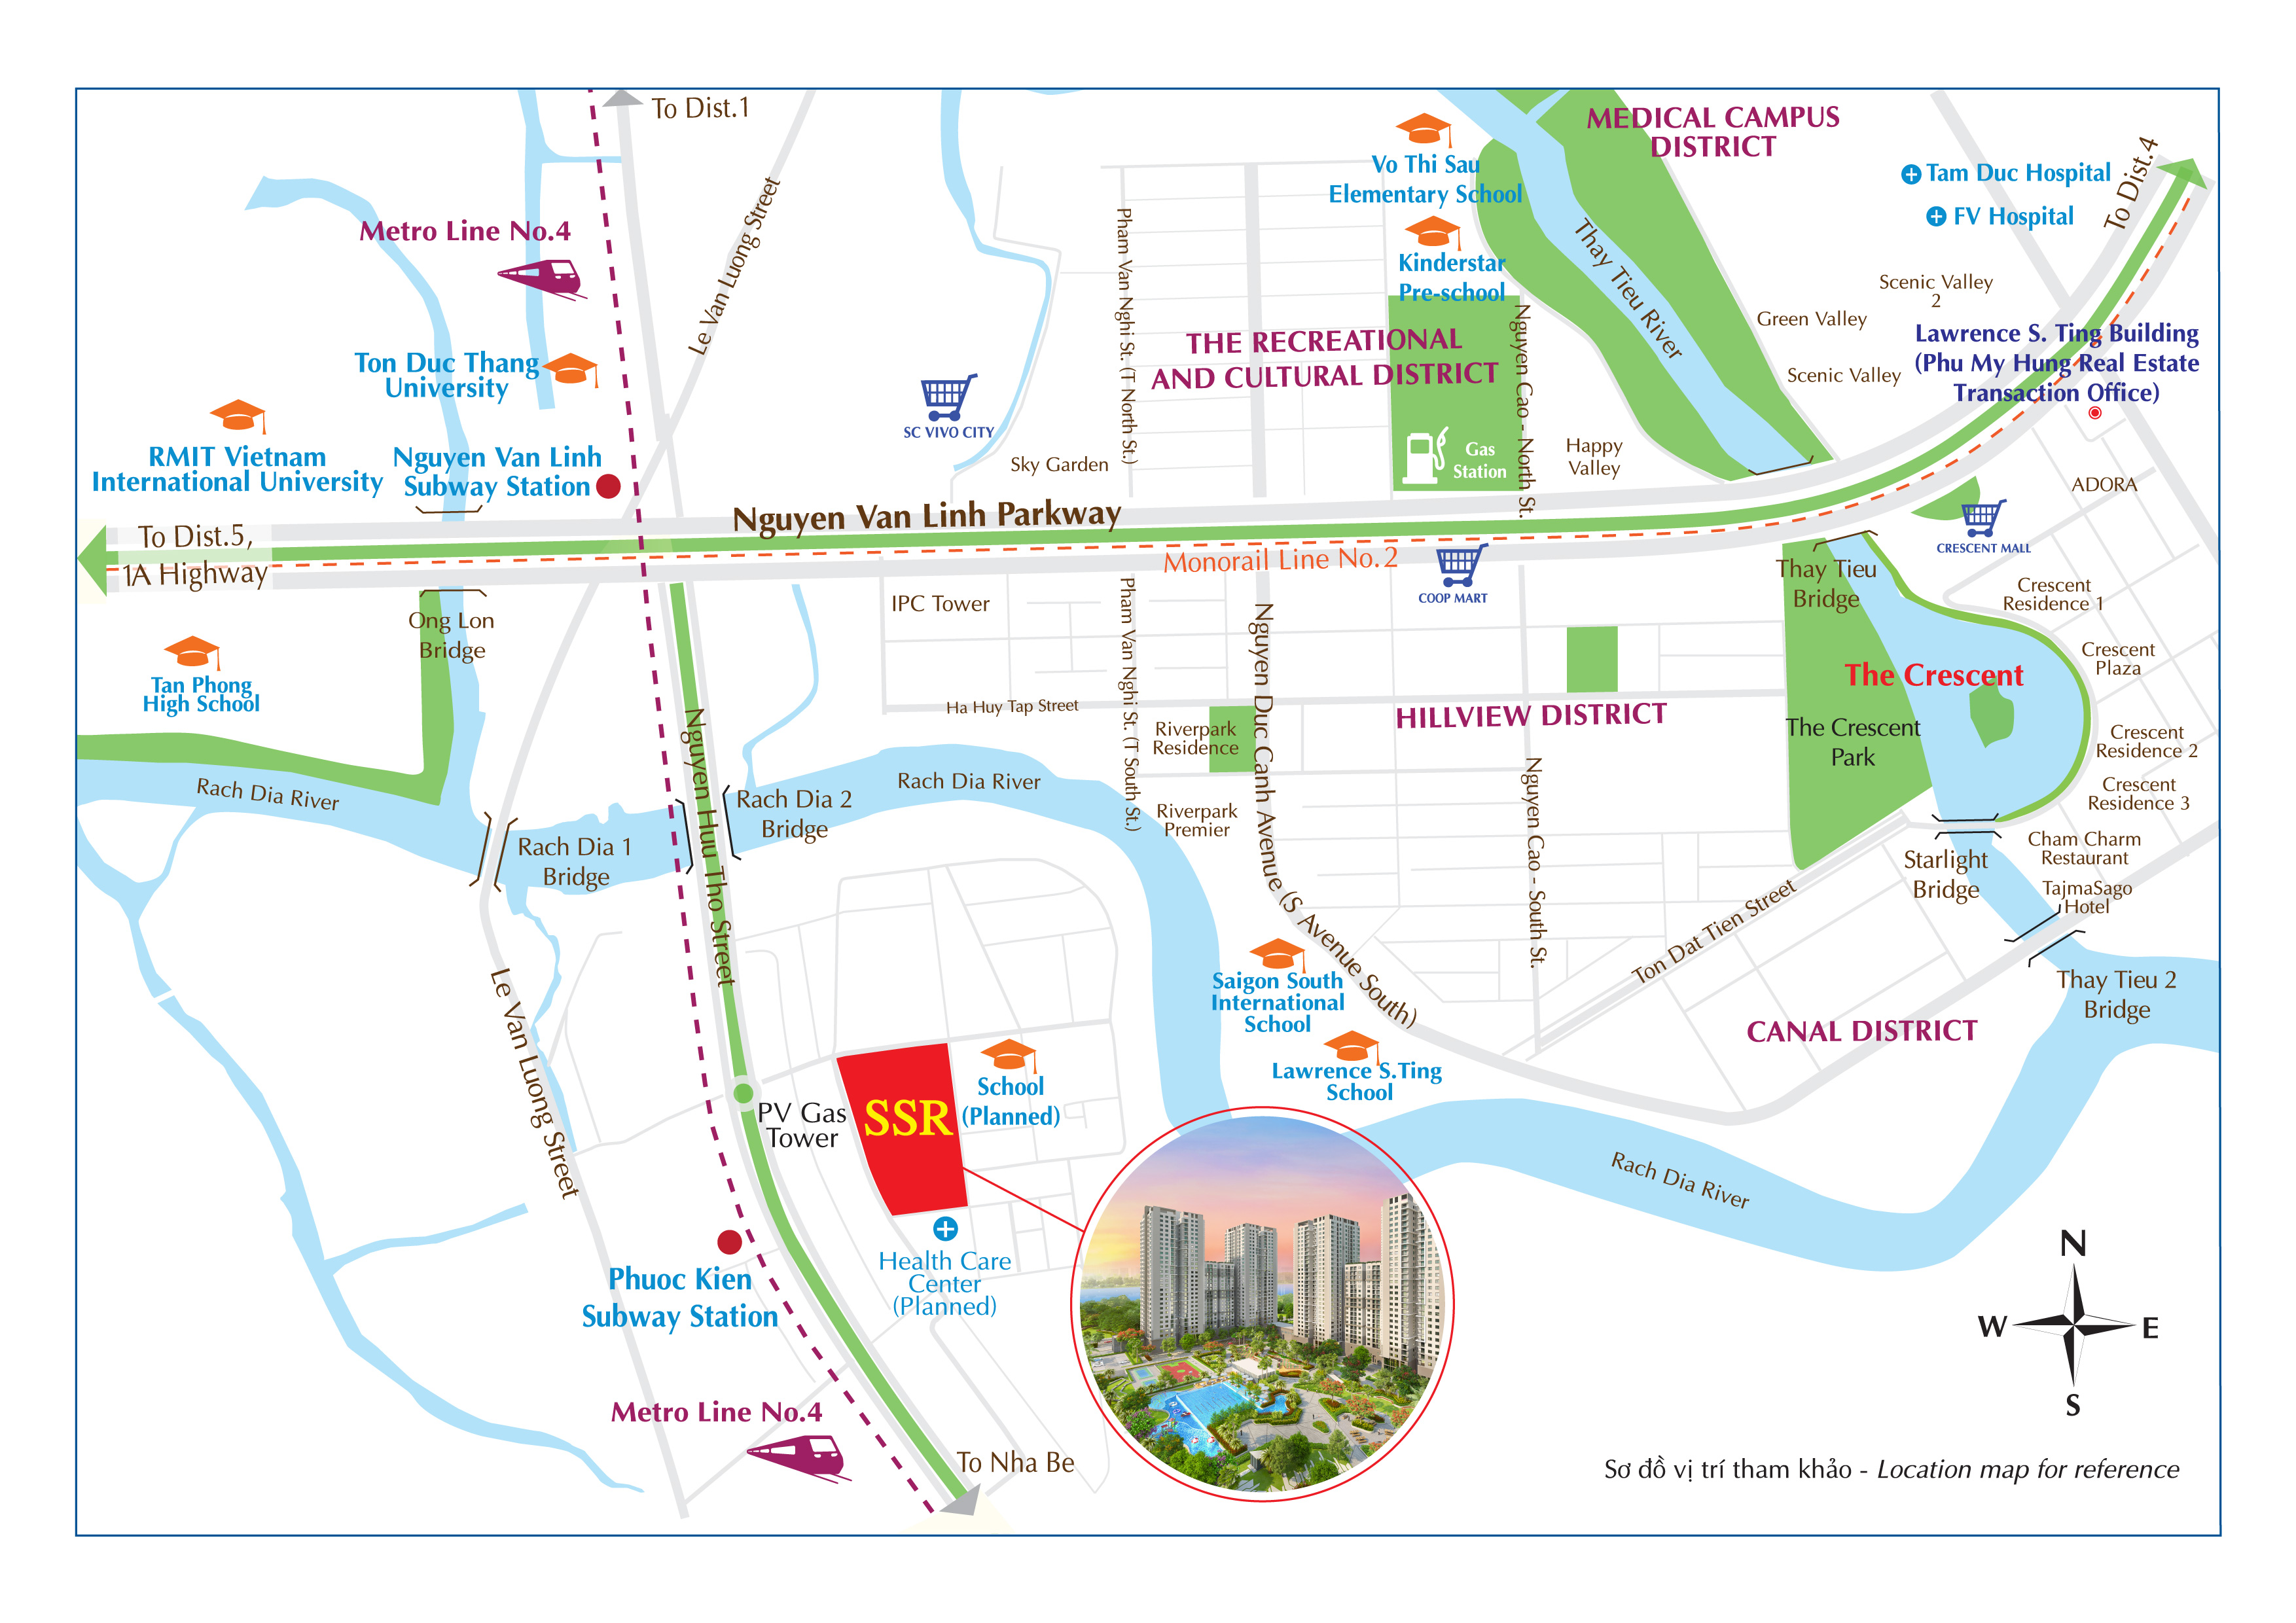 Saigon South Residences được giao nhà vào cuối năm 2019 là thời điểm nhiều công trình hạ tầng xung quanh dự án hoàn tất, tạo đòn bẩy gia tăng giá trị đáng kì vọng cho người mua.